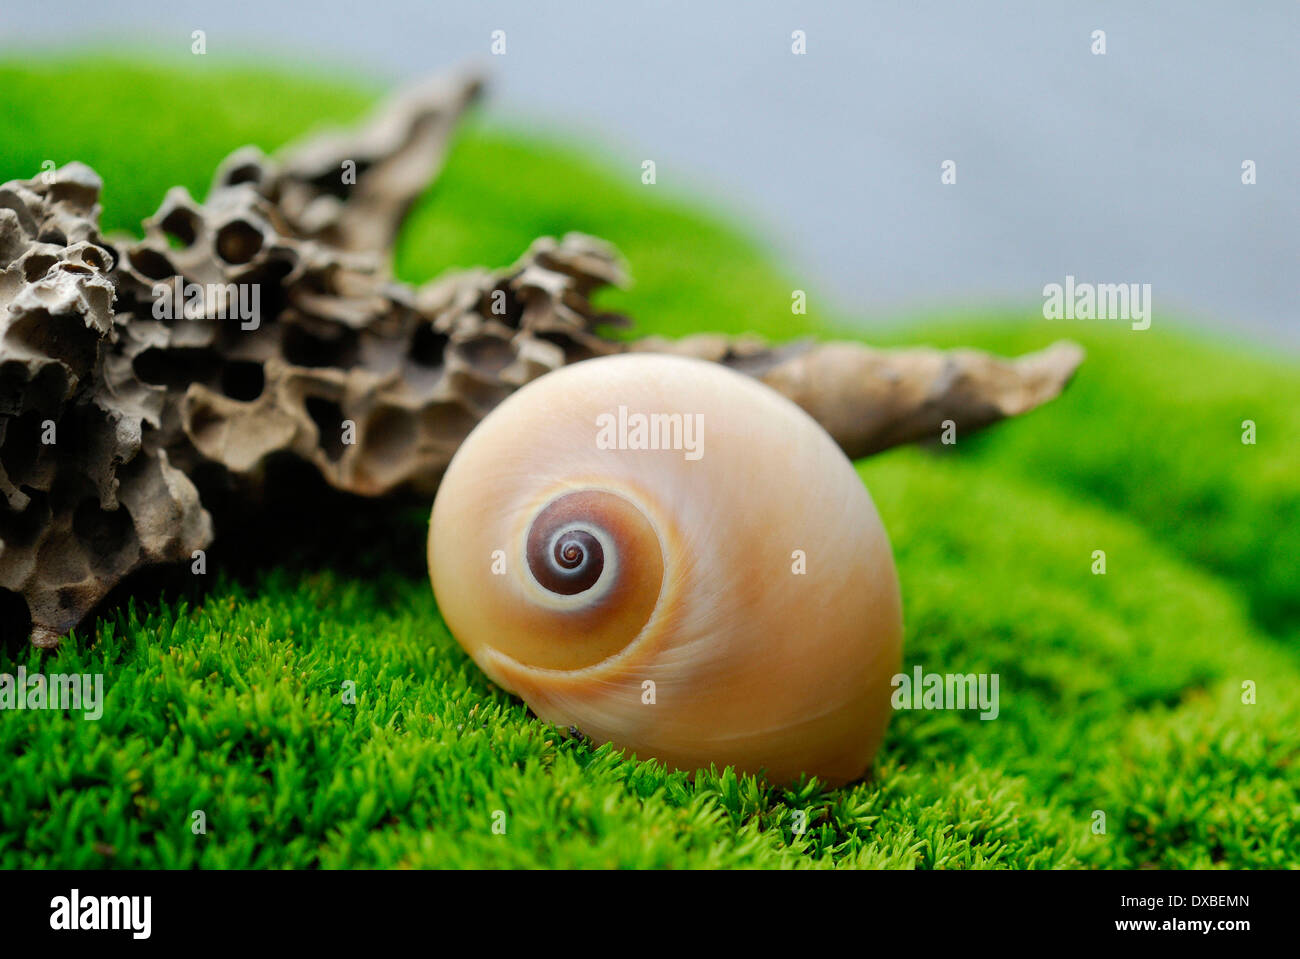 Snail shell Stock Photo